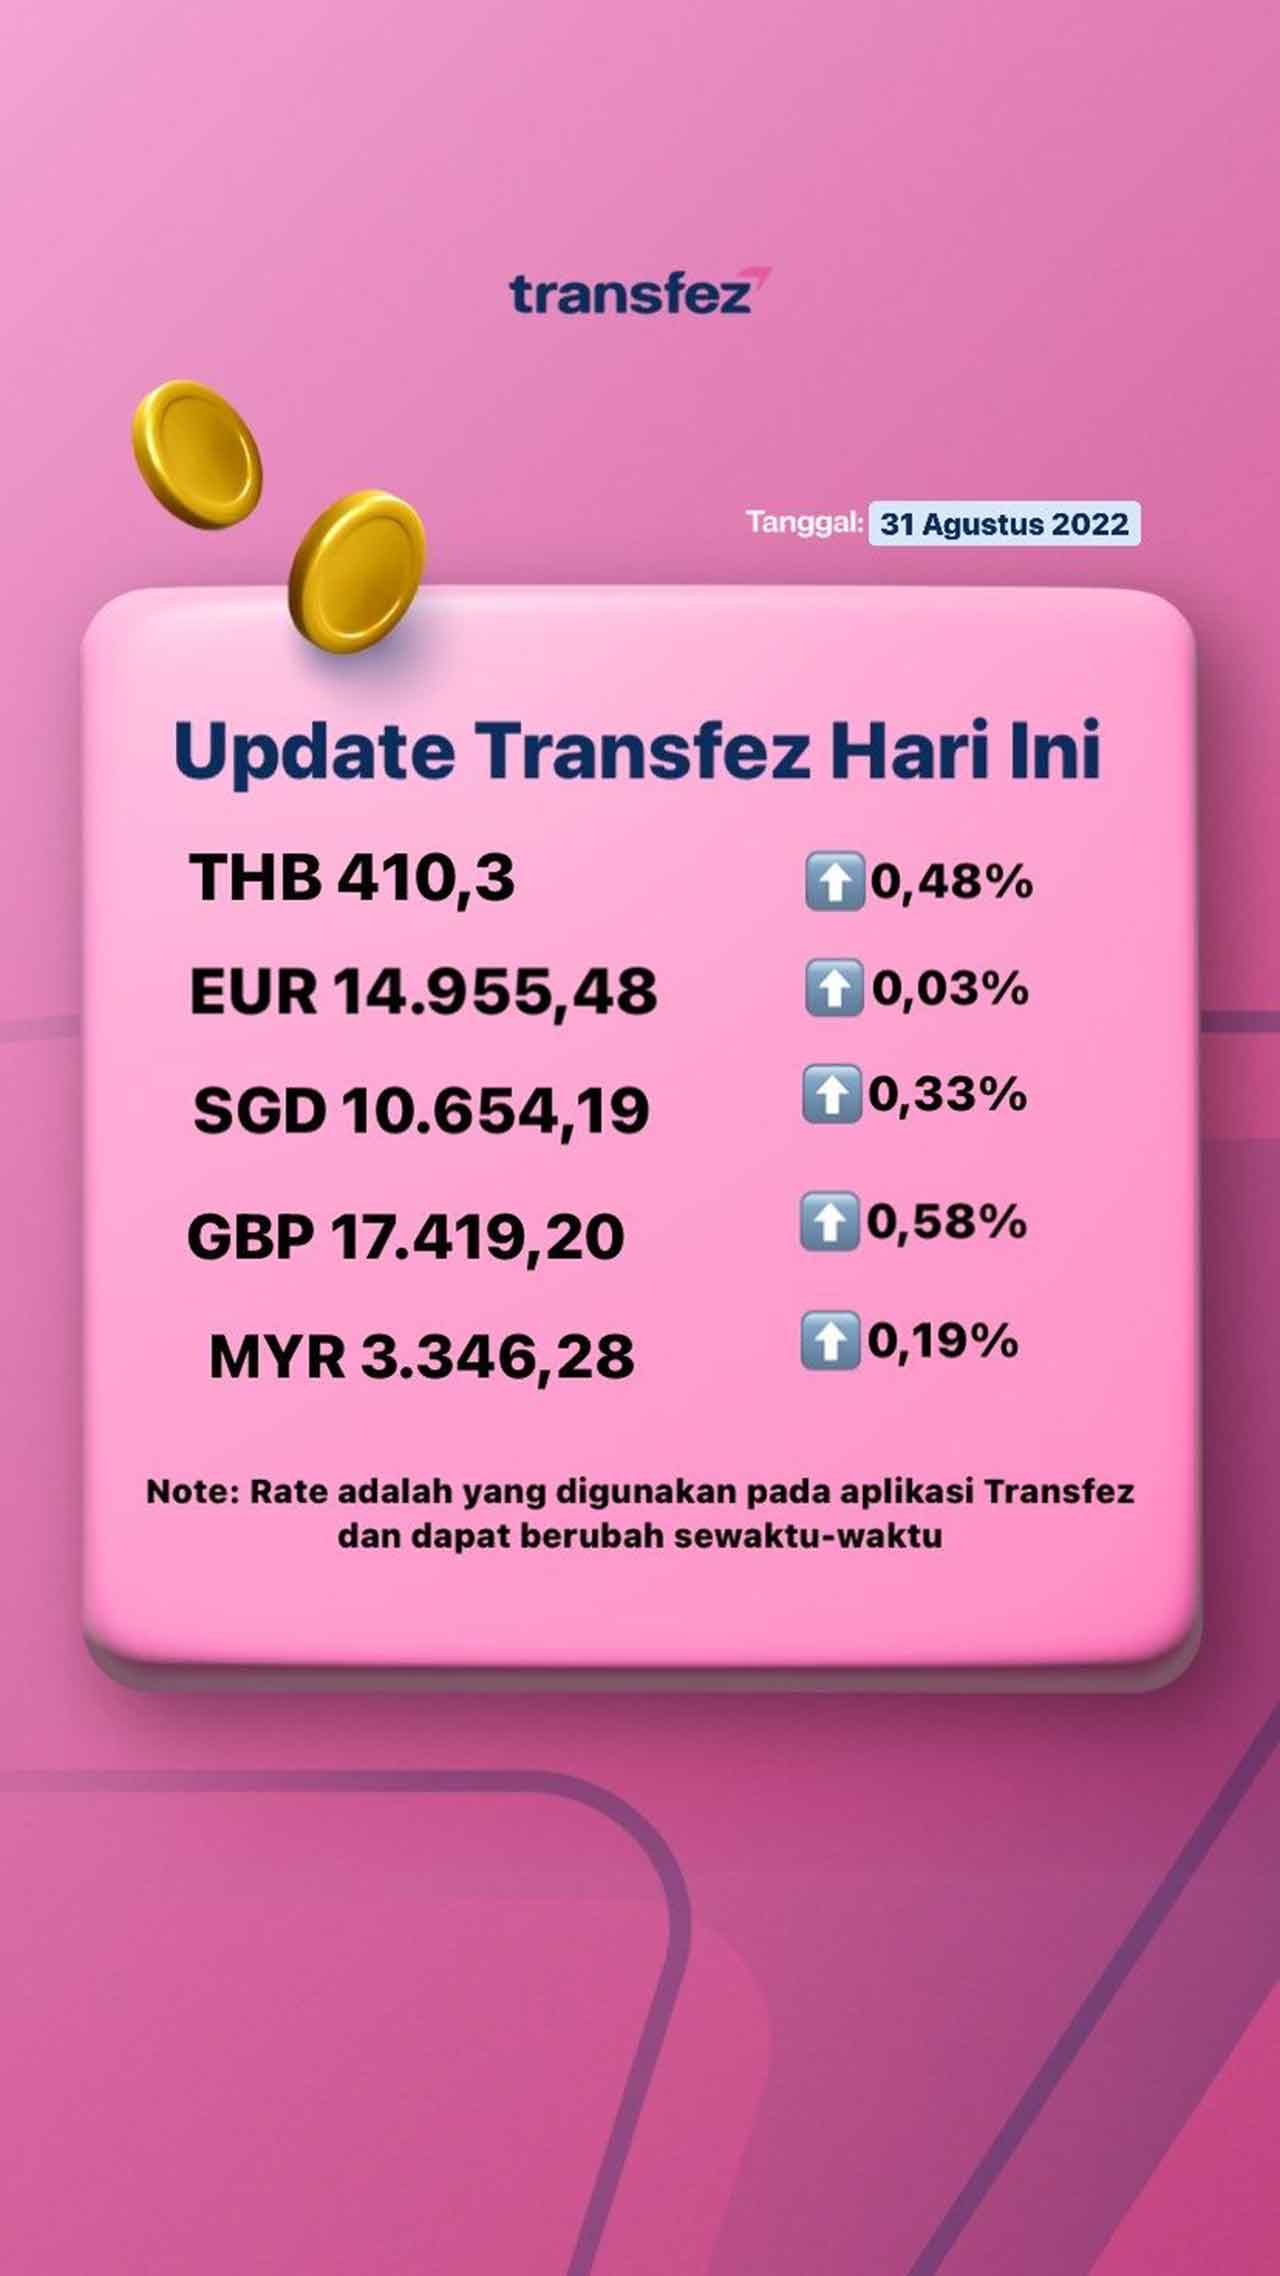 Update Rate Transfez Hari Ini 31 Agustus 2022